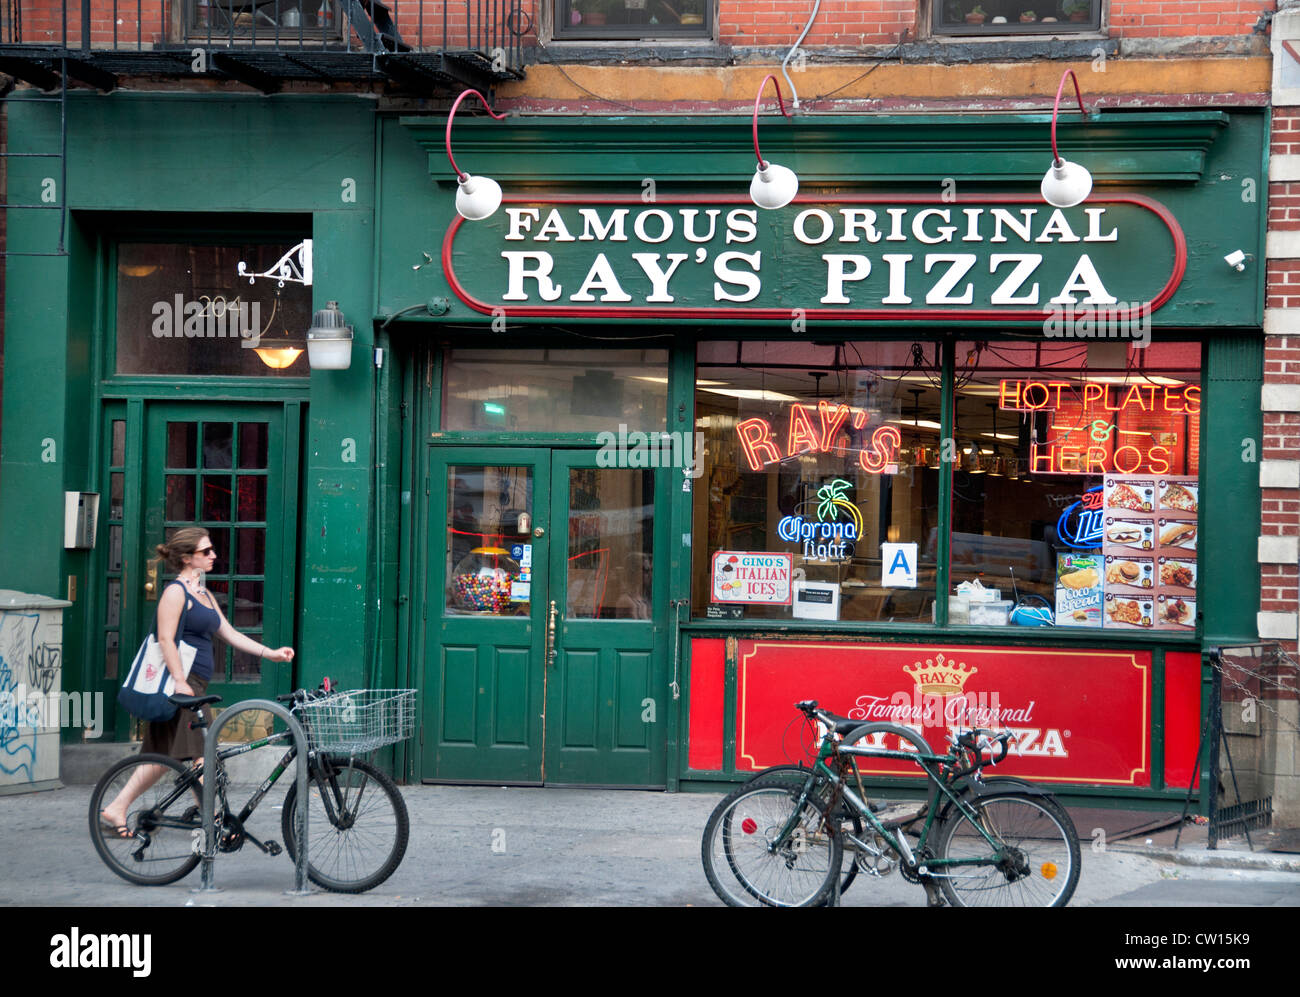 Famoso Ray di pizza originale Ottava Avenue Chelsea Meatpacking District Manhattan New York City Stati Uniti d'America Foto Stock